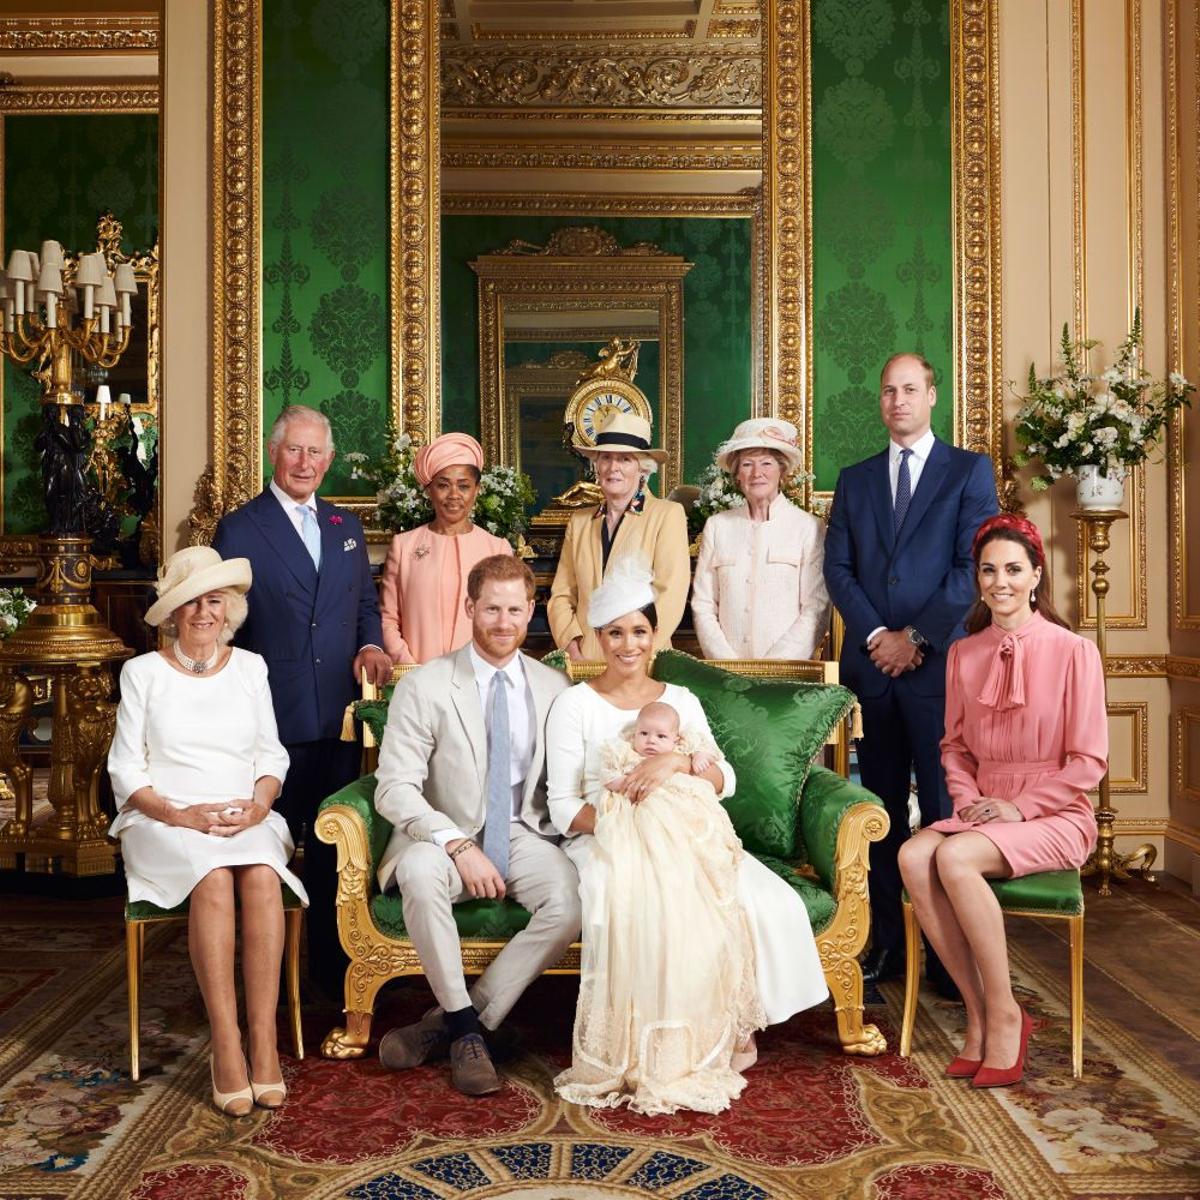 La familia real británica posa por el bautizo de Archie con los duques de Sussex en el centro de la imagen junto a su hijo